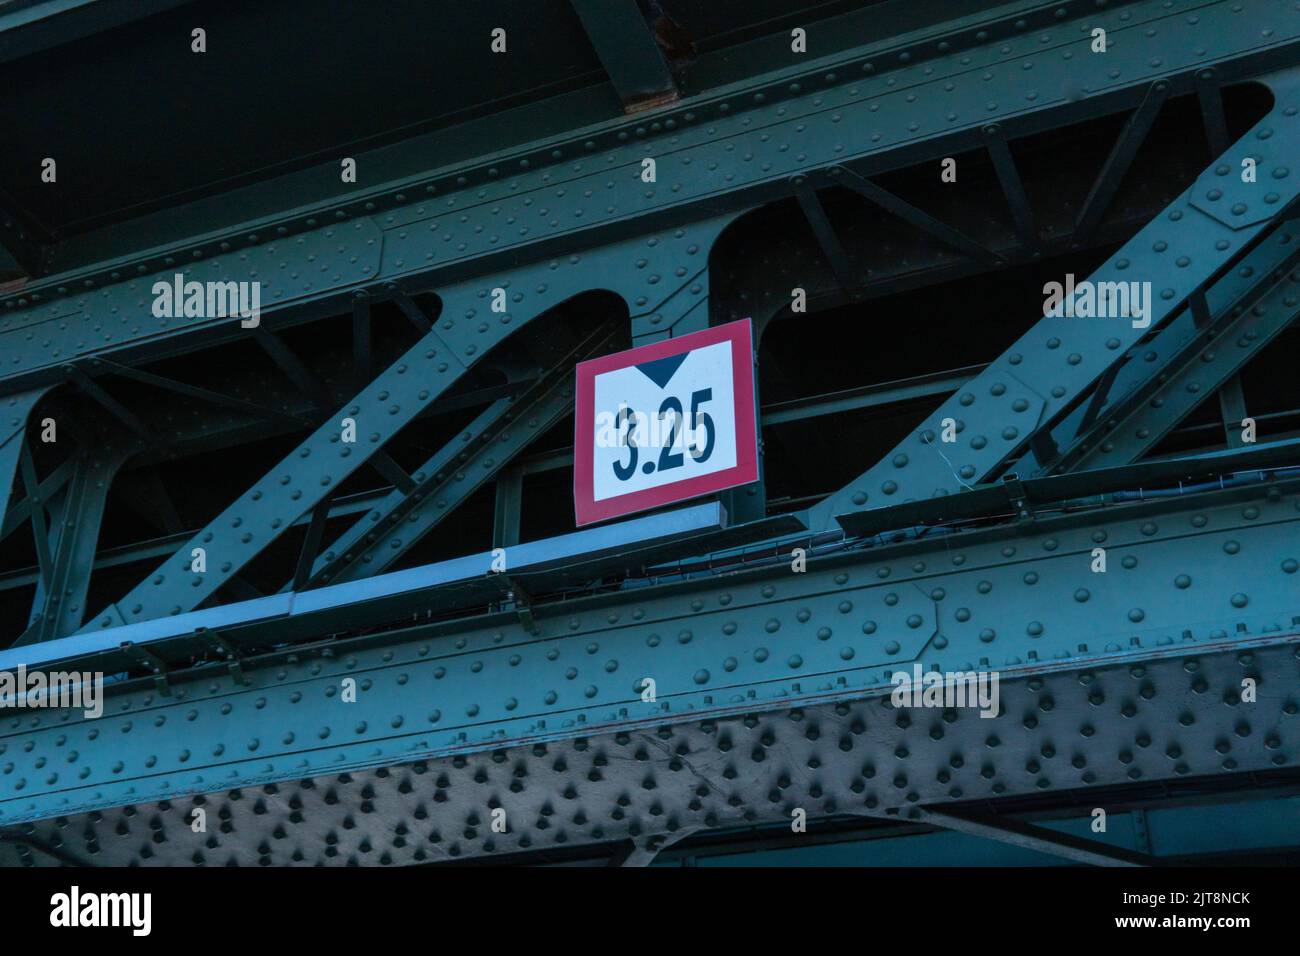 RUSSLAND, PETERSBURG - 20. AUG 2022: Verkehrsbrücke Schilderkonstruktion maximale Gefahr Fahrhöhe verboten, Konzept Stopp Warnung in Auto für rote Form Stockfoto